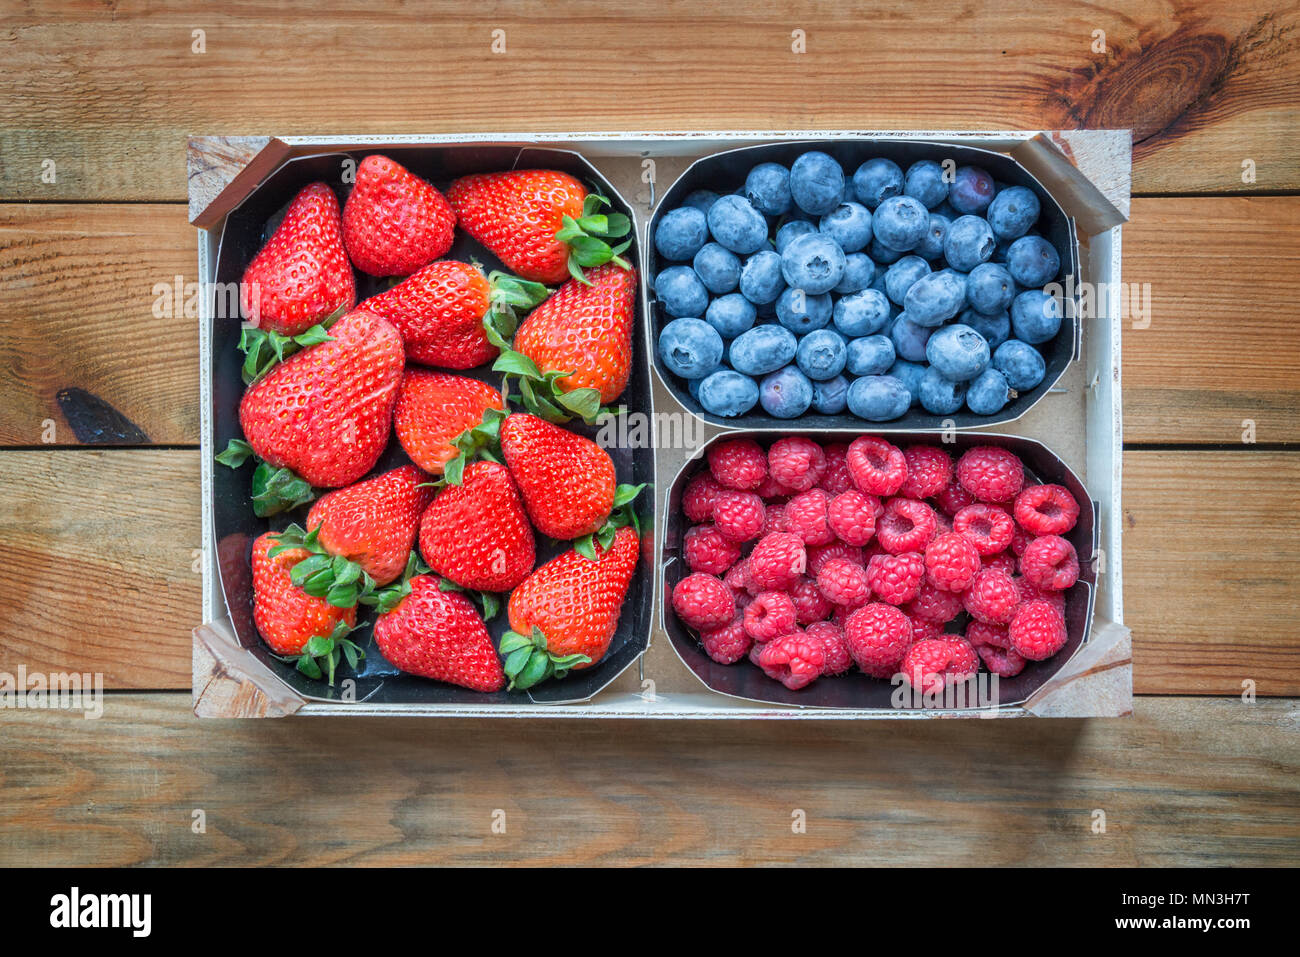 Mischung aus organischen Beeren. Körbe mit frischen Himbeeren, Heidelbeeren, Erdbeeren, die auf holz- Tabelle, Ansicht von oben Stockfoto